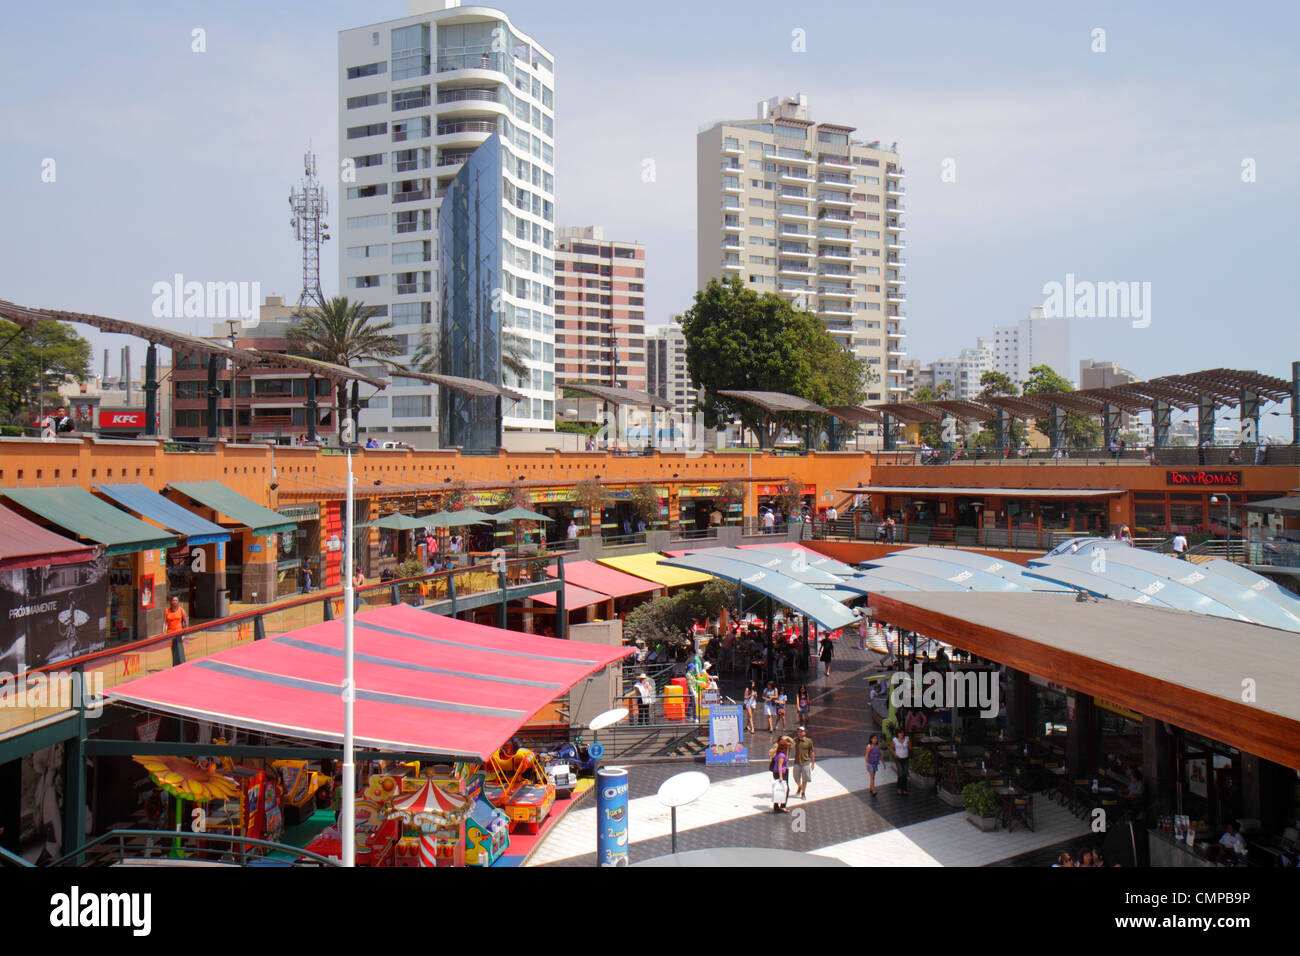 Lima Peru, Miraflores, Malecon de la Reserva, Larcomar, Shopping Shopper Shopper shoppen shoppen shoppen Geschäfte Markt Märkte Marktplatz kaufen verkaufen, Einzelhandelsgeschäfte Stockfoto